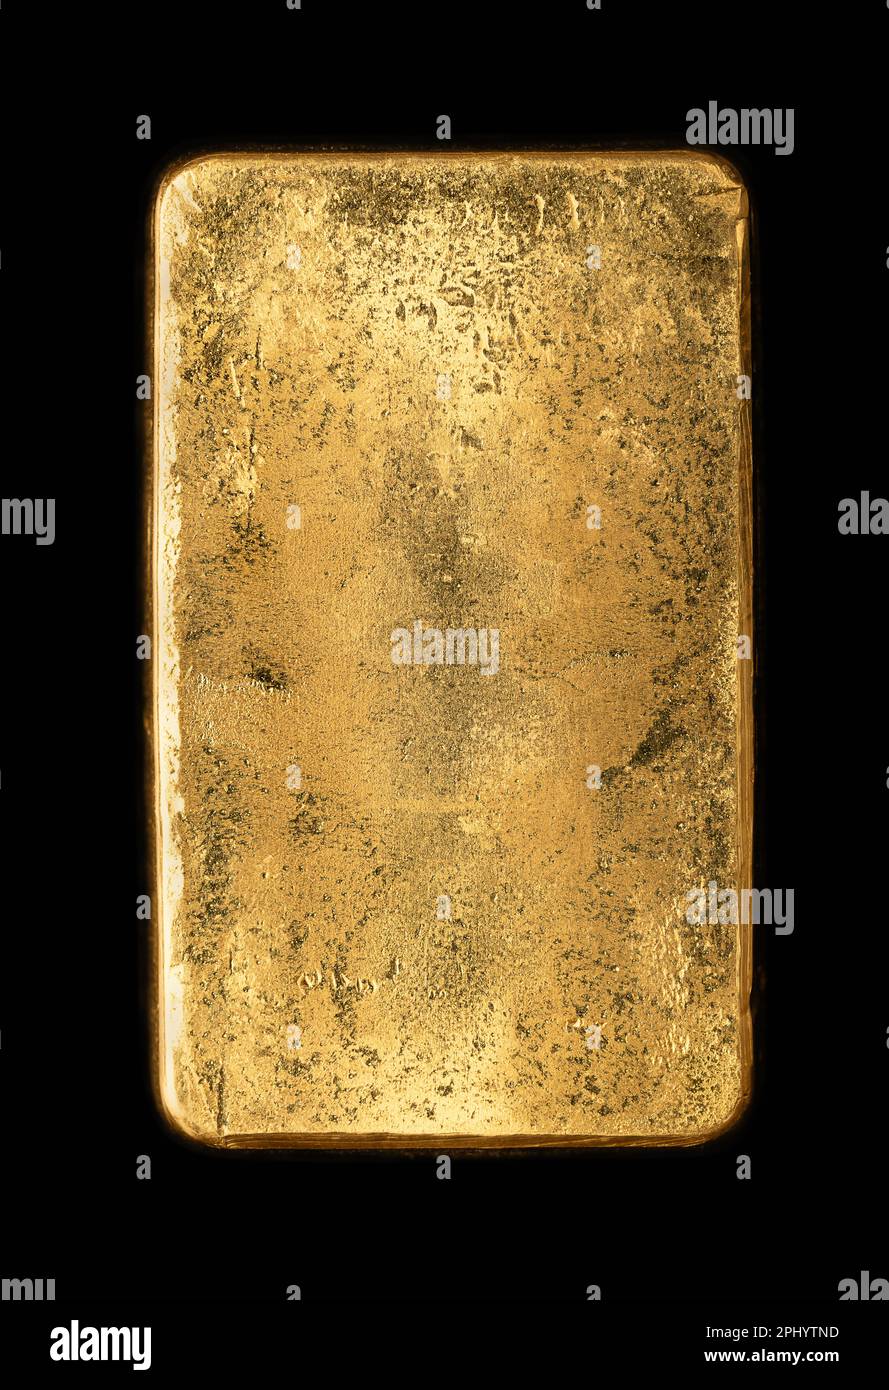 Oberfläche der Rückseite eines goldgegossenen Barrys, auch Goldbarren genannt. Raffiniertes, reines metallisches Gold, hergestellt durch Gießen von geschmolzenem Metall in eine Form. Stockfoto